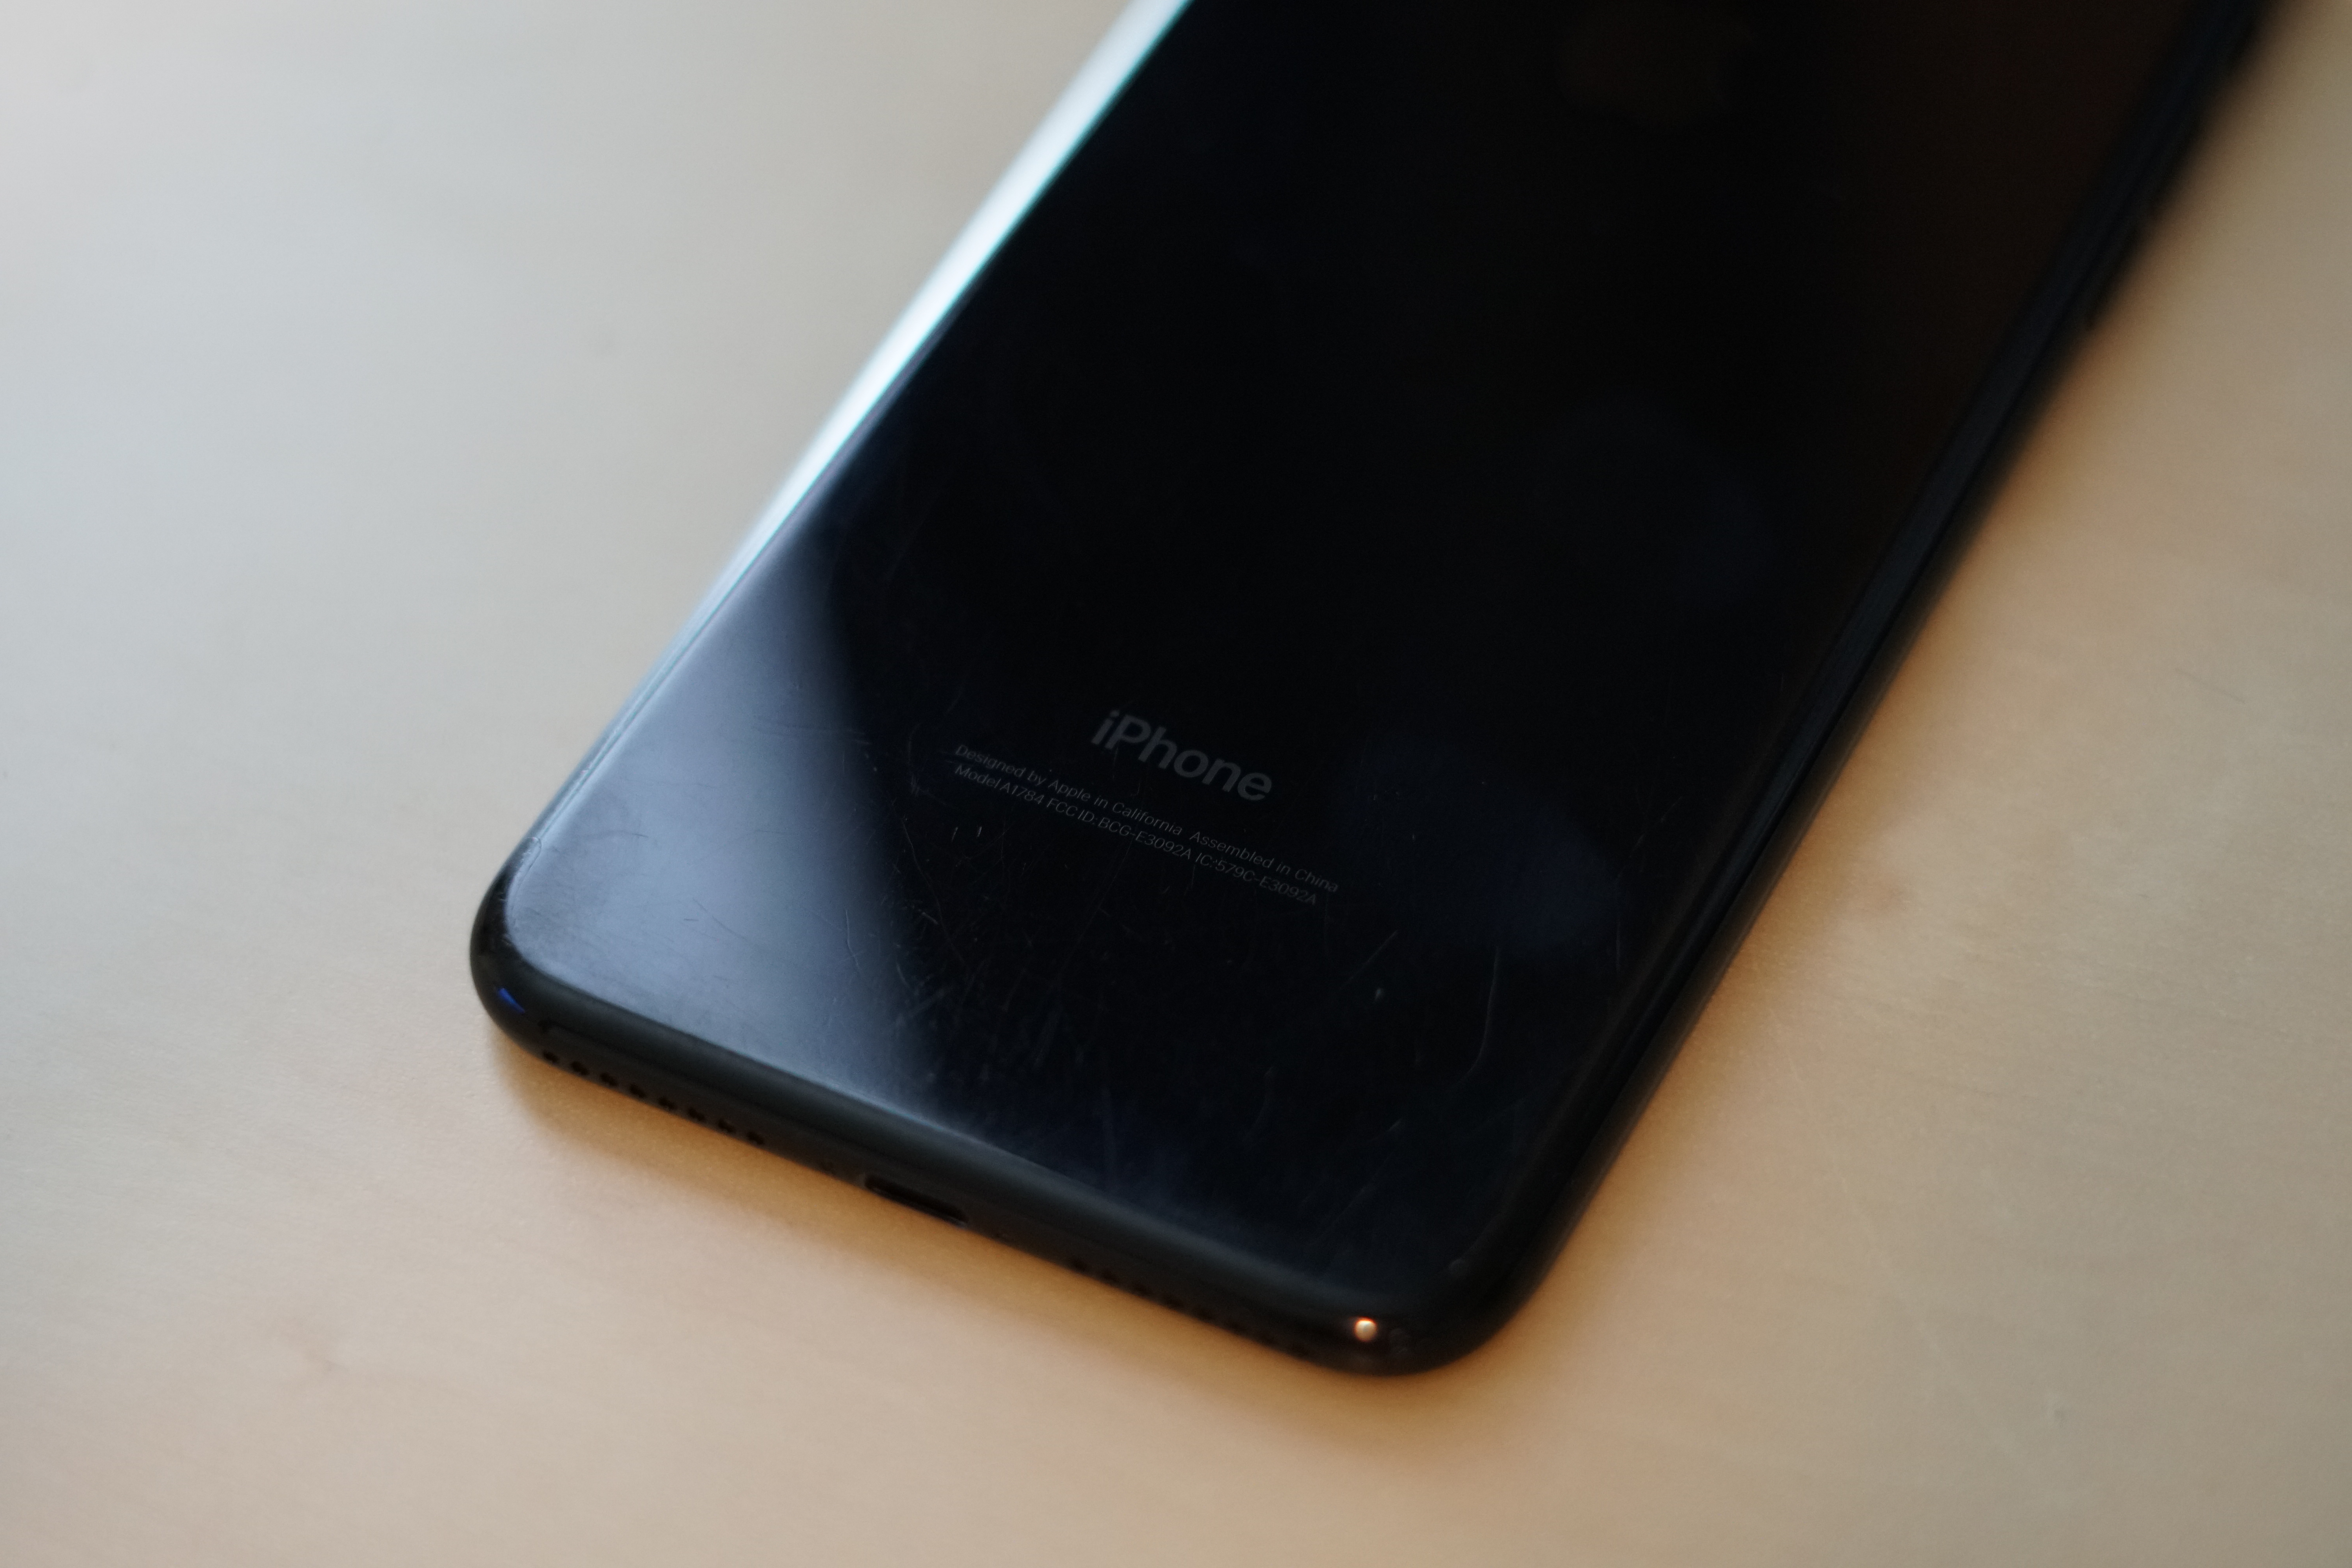 iPhone 7 Jet Black sembra usato 1 anno 2